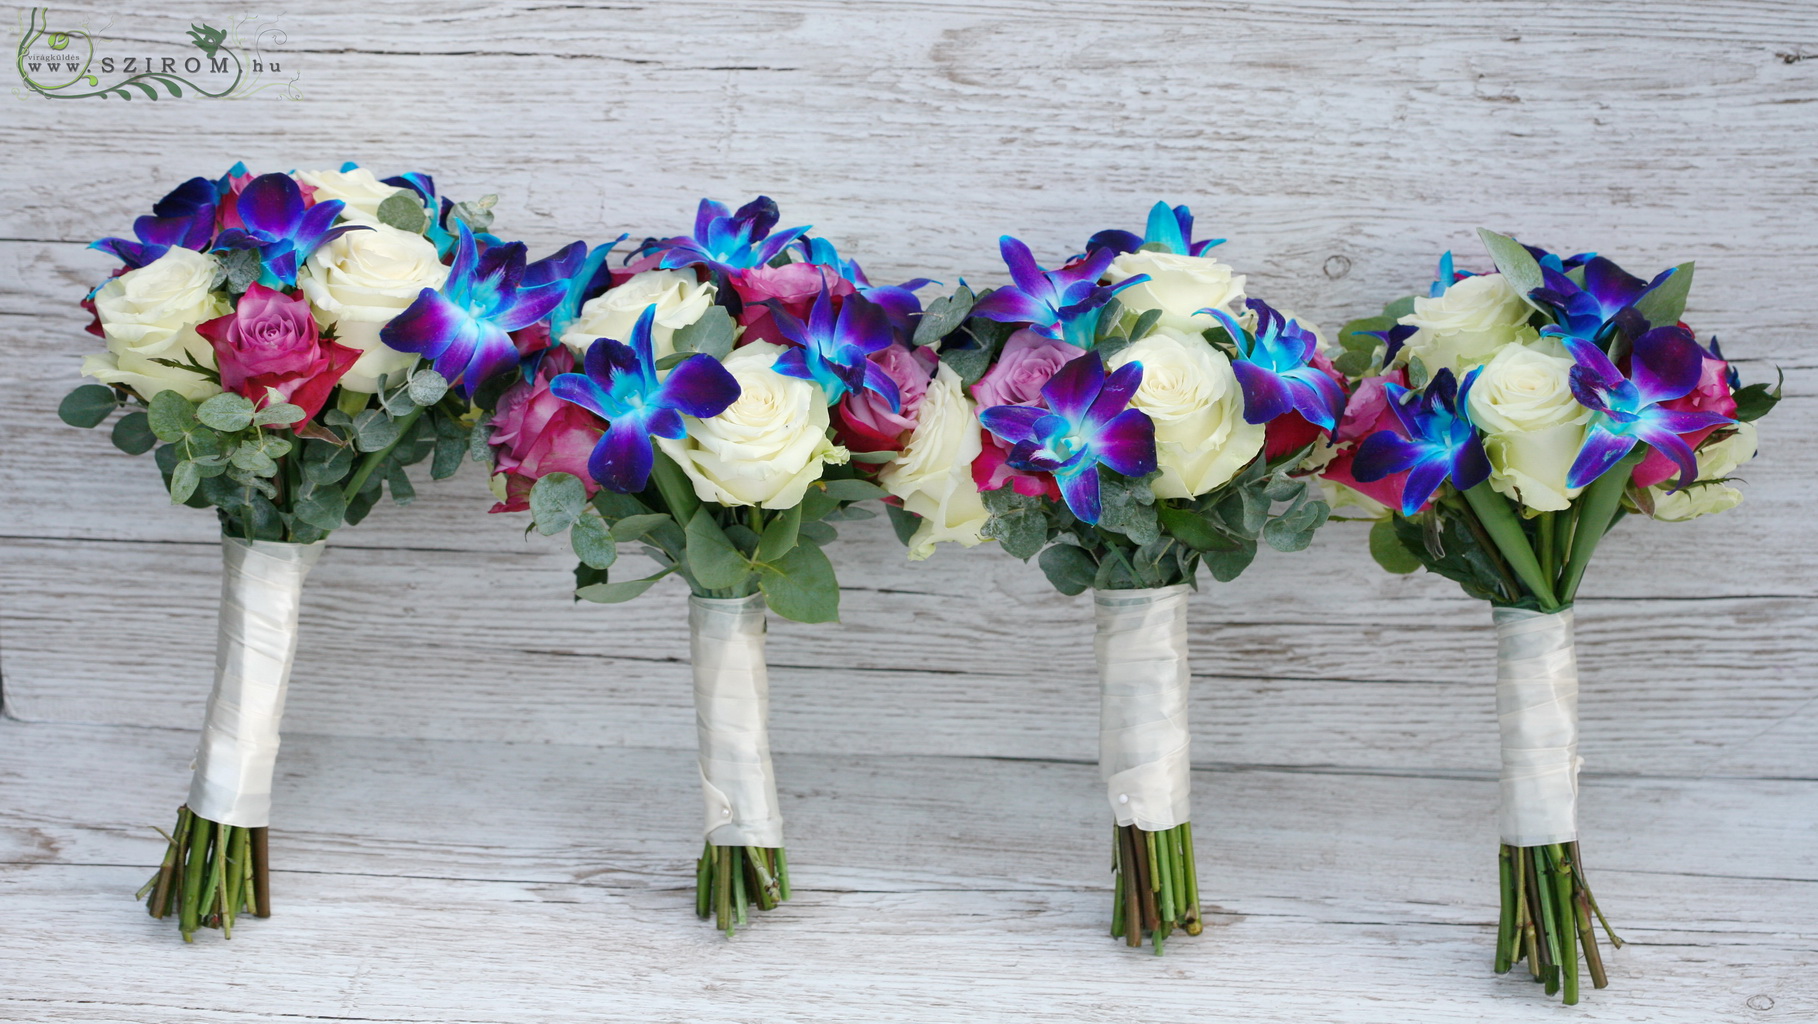 Menyaszonyi / koszorúslány csokor (rózsa, dendrobium orchidea, kék, fehér, rózsaszín) 1 db